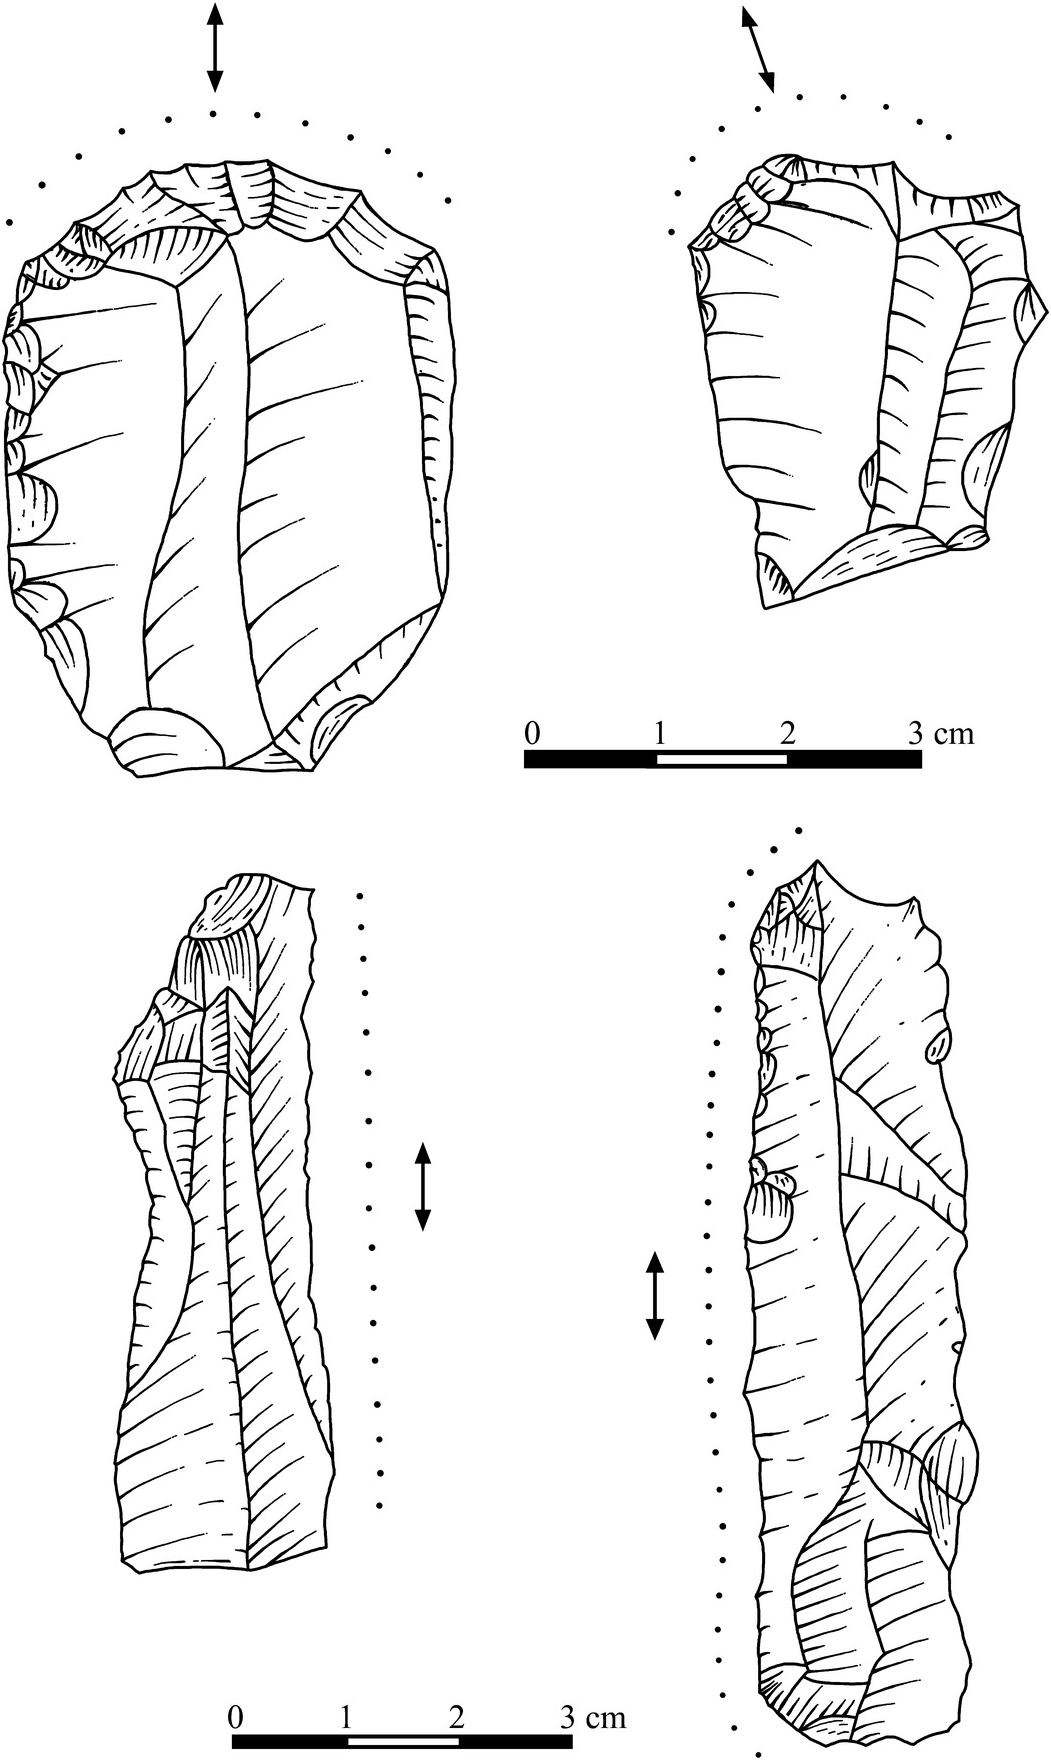 paleolithic age clothing